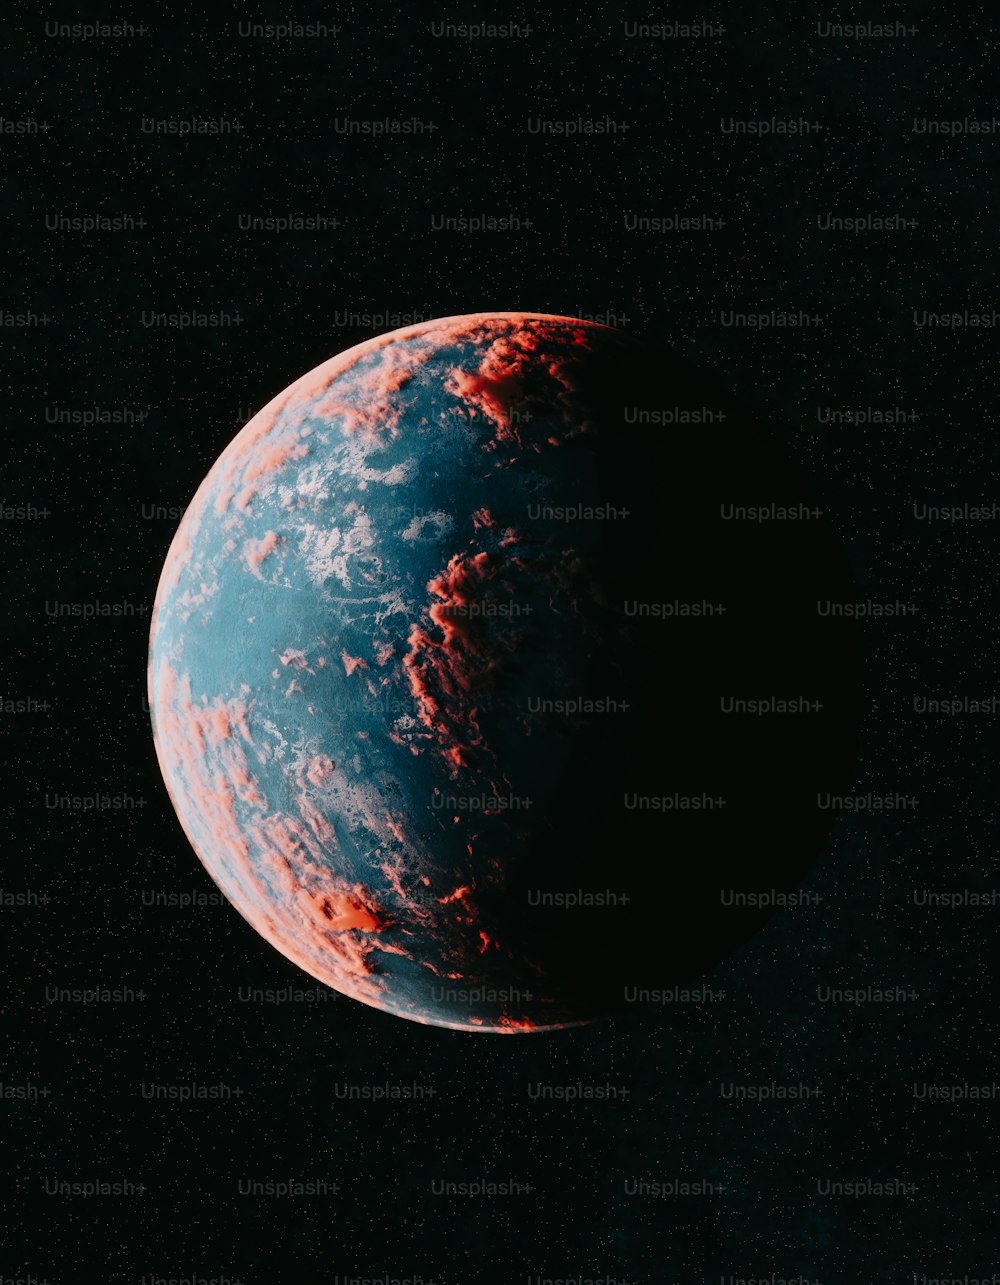 Ein roter und blauer Planet mit schwarzem Hintergrund